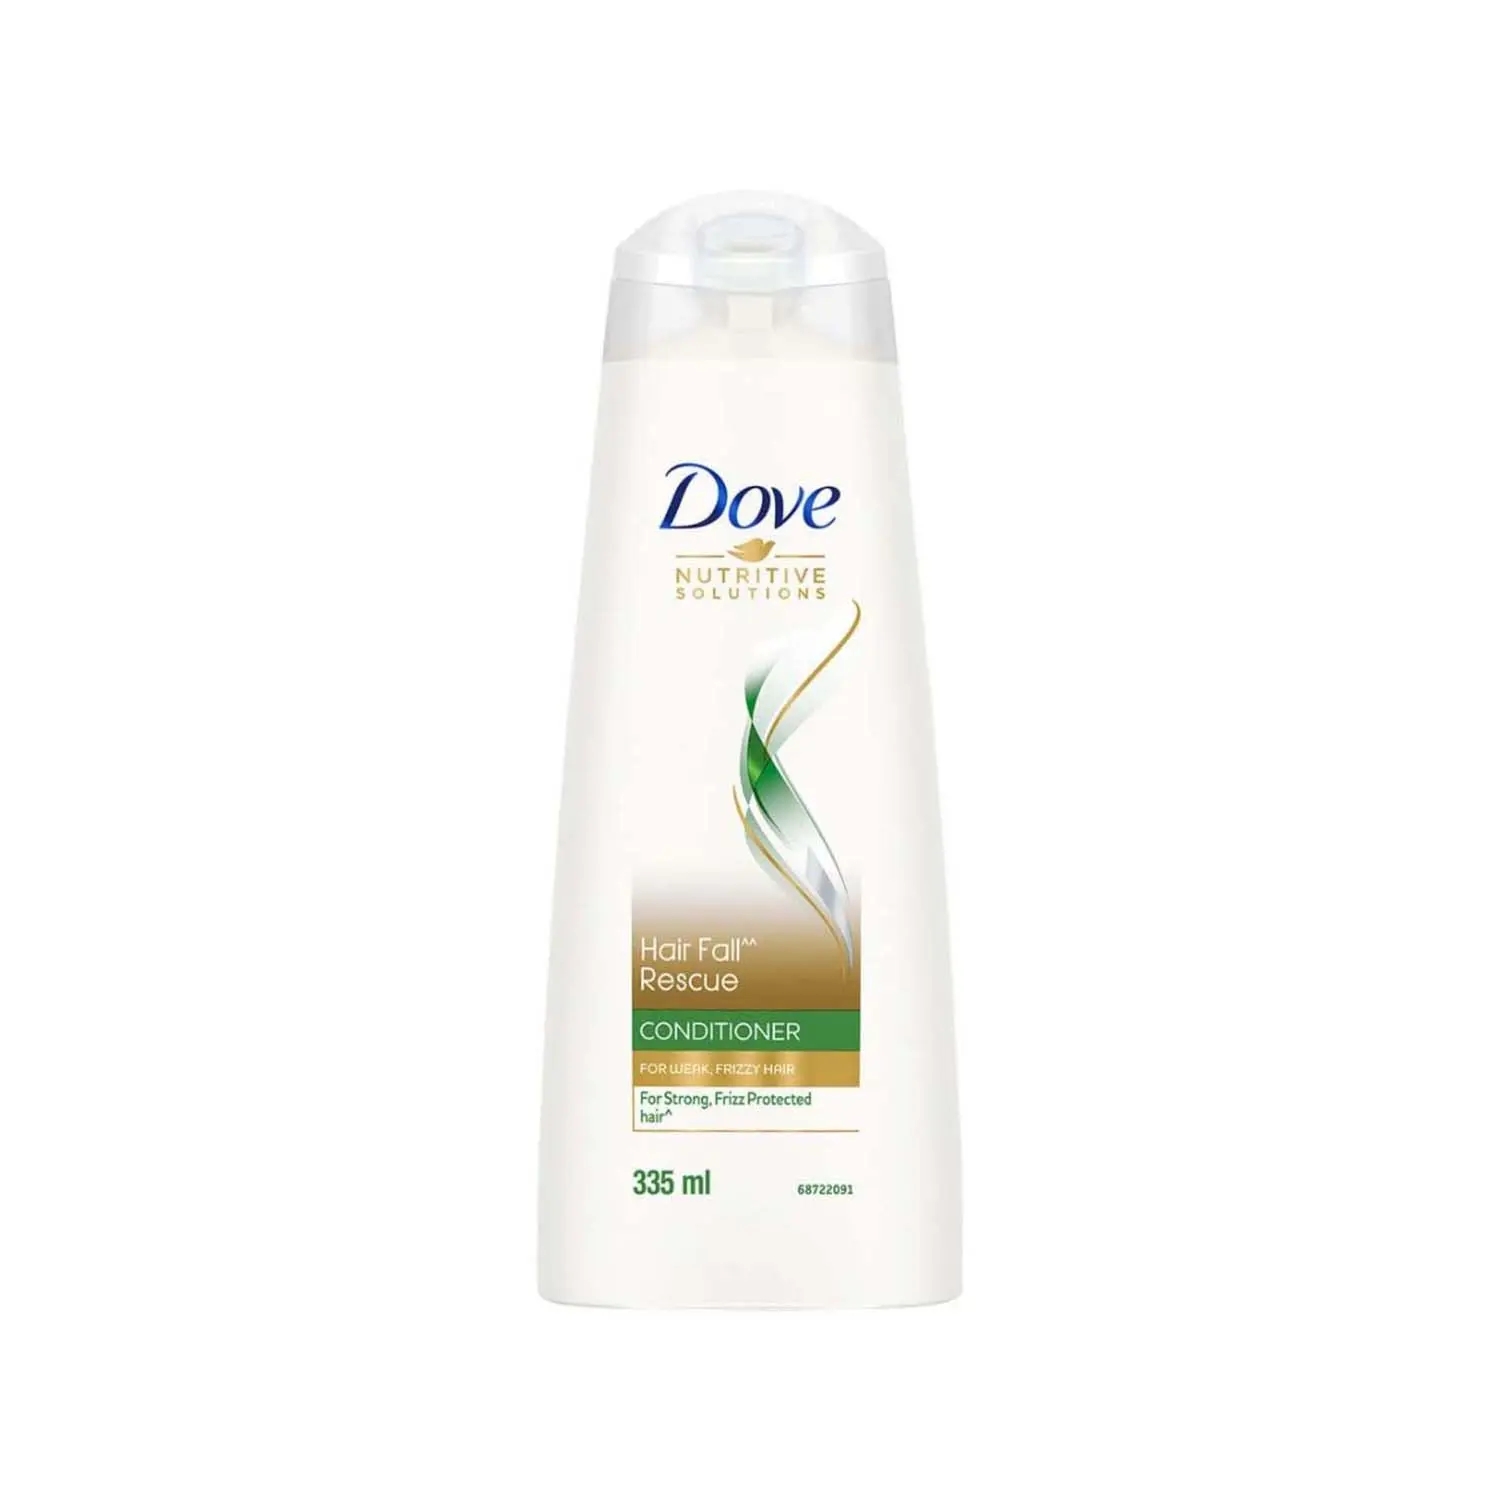 Dove | Dove Hair Fall Rescue Conditioner (335ml)